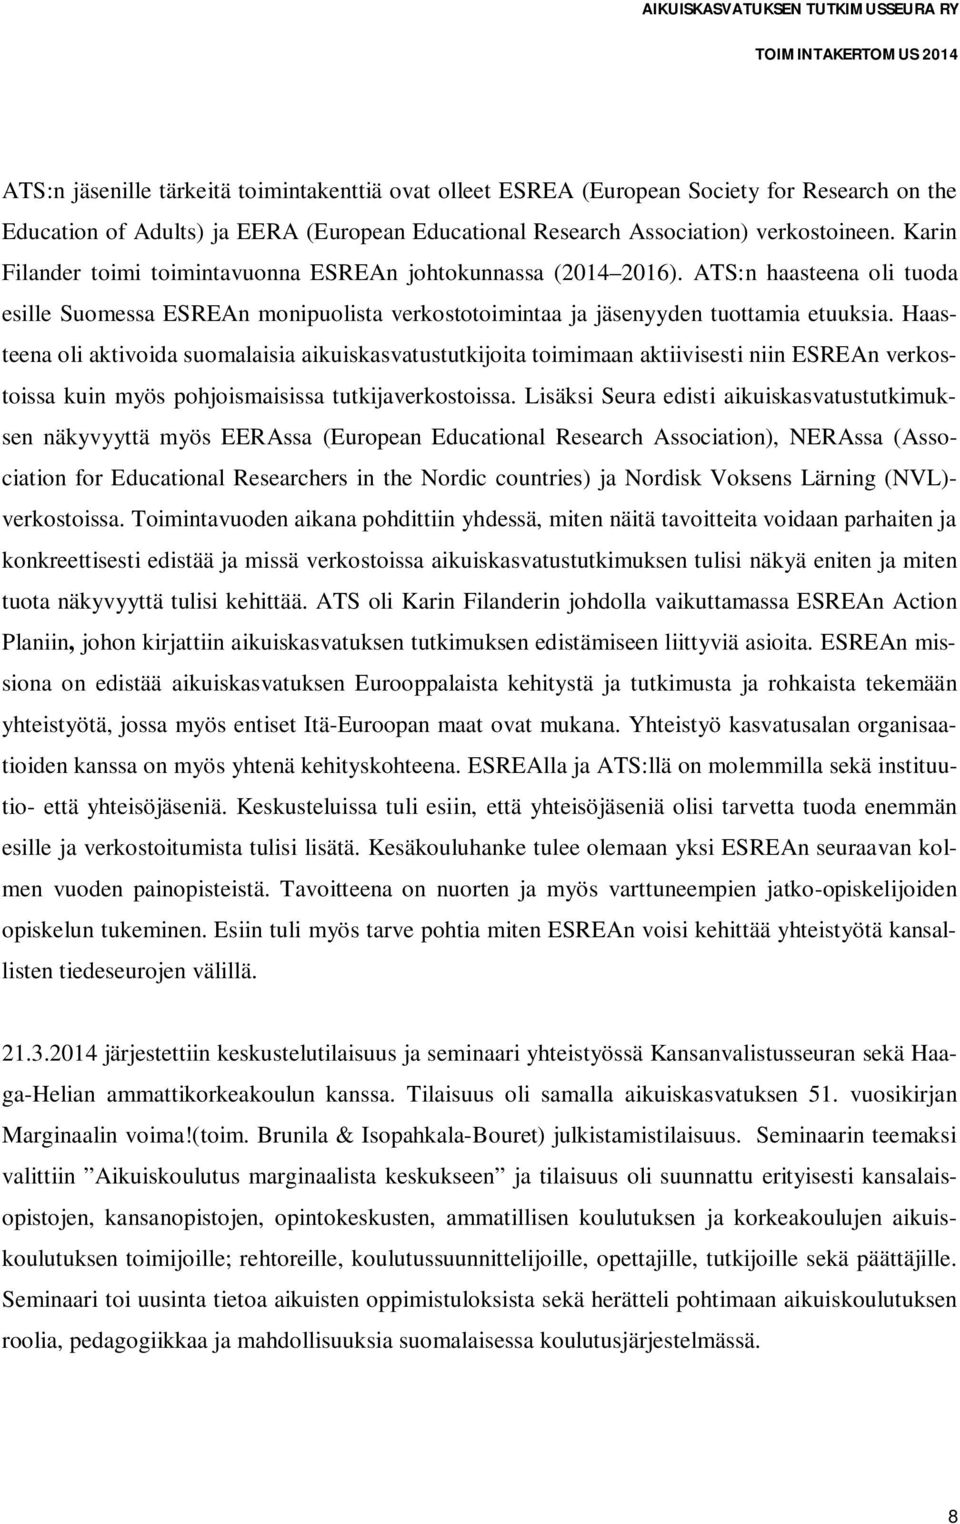 Haasteena oli aktivoida suomalaisia aikuiskasvatustutkijoita toimimaan aktiivisesti niin ESREAn verkostoissa kuin myös pohjoismaisissa tutkijaverkostoissa.